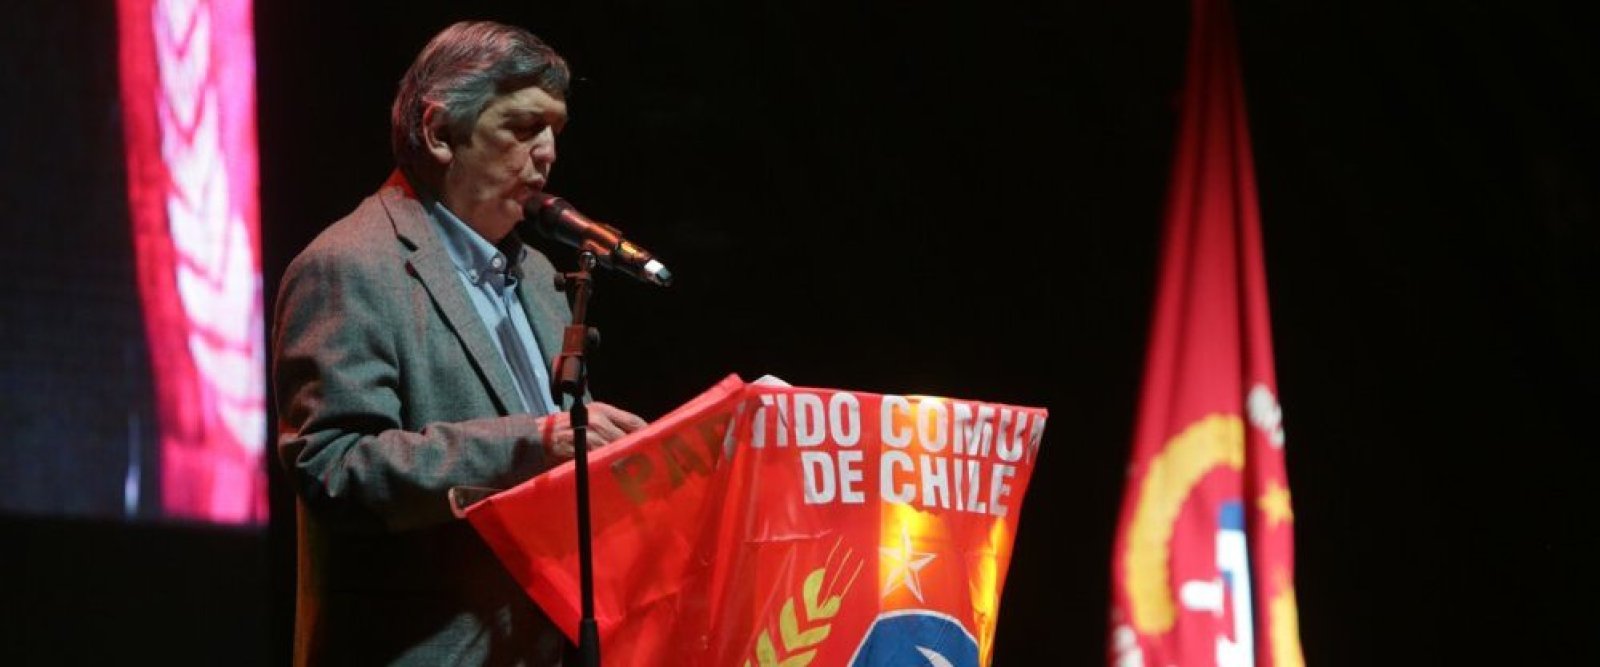 Lautaro Carmona y Bárbara Figueroa liderando: Partido Comunista confirma nueva directiva